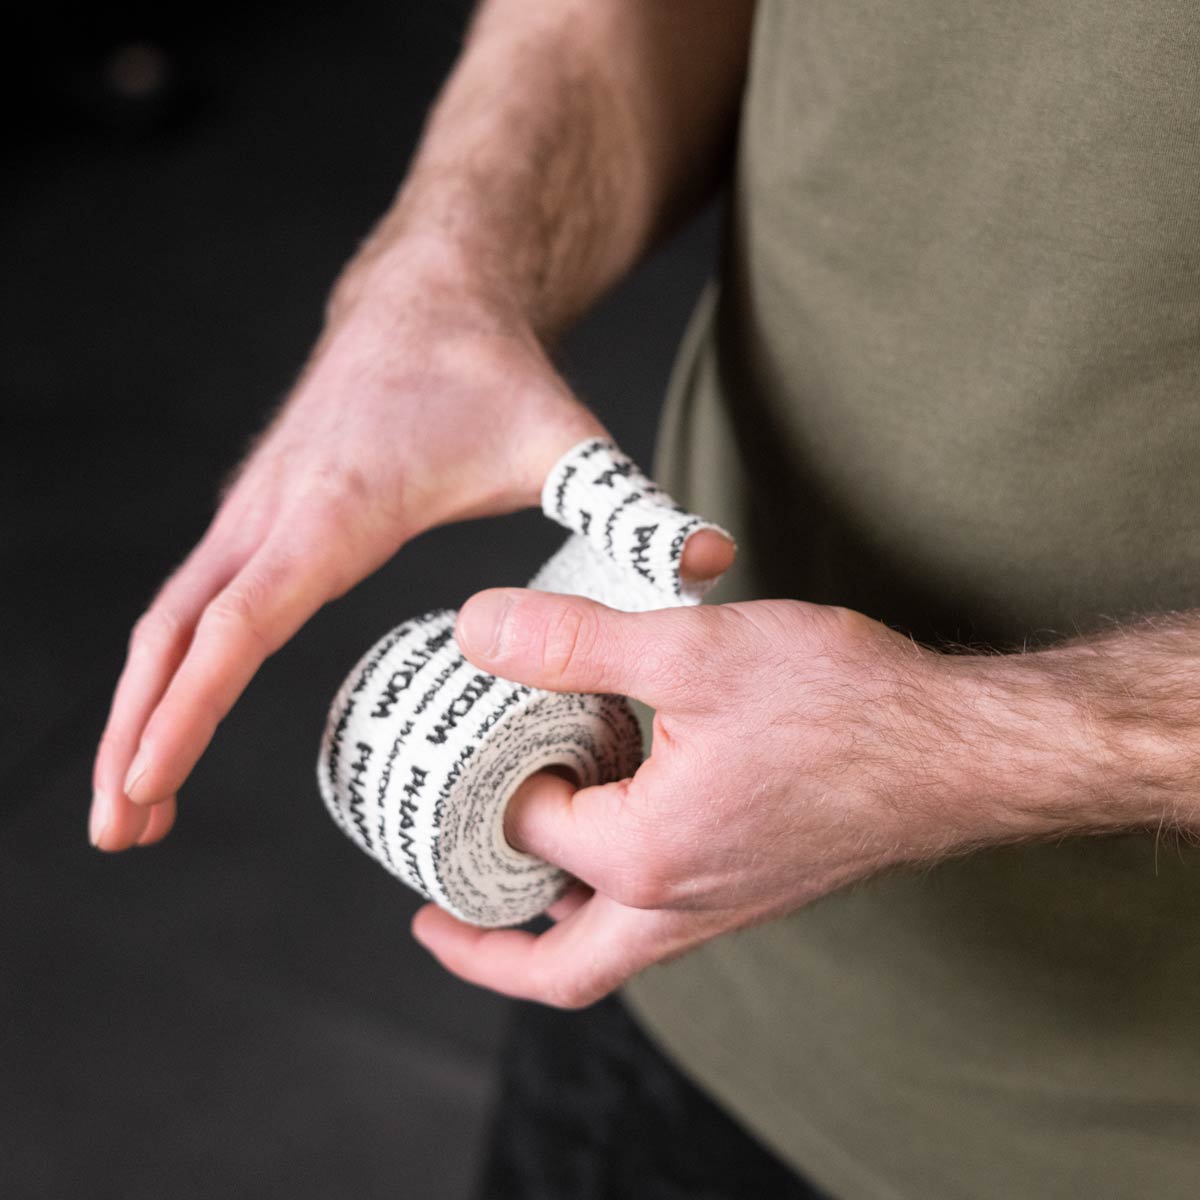 Phantom Grip Tape für Kampfsport und Fitness in der Farbe schwarz. Ideal für Thumb Tapes beim Crossfit und für Hook Grips.